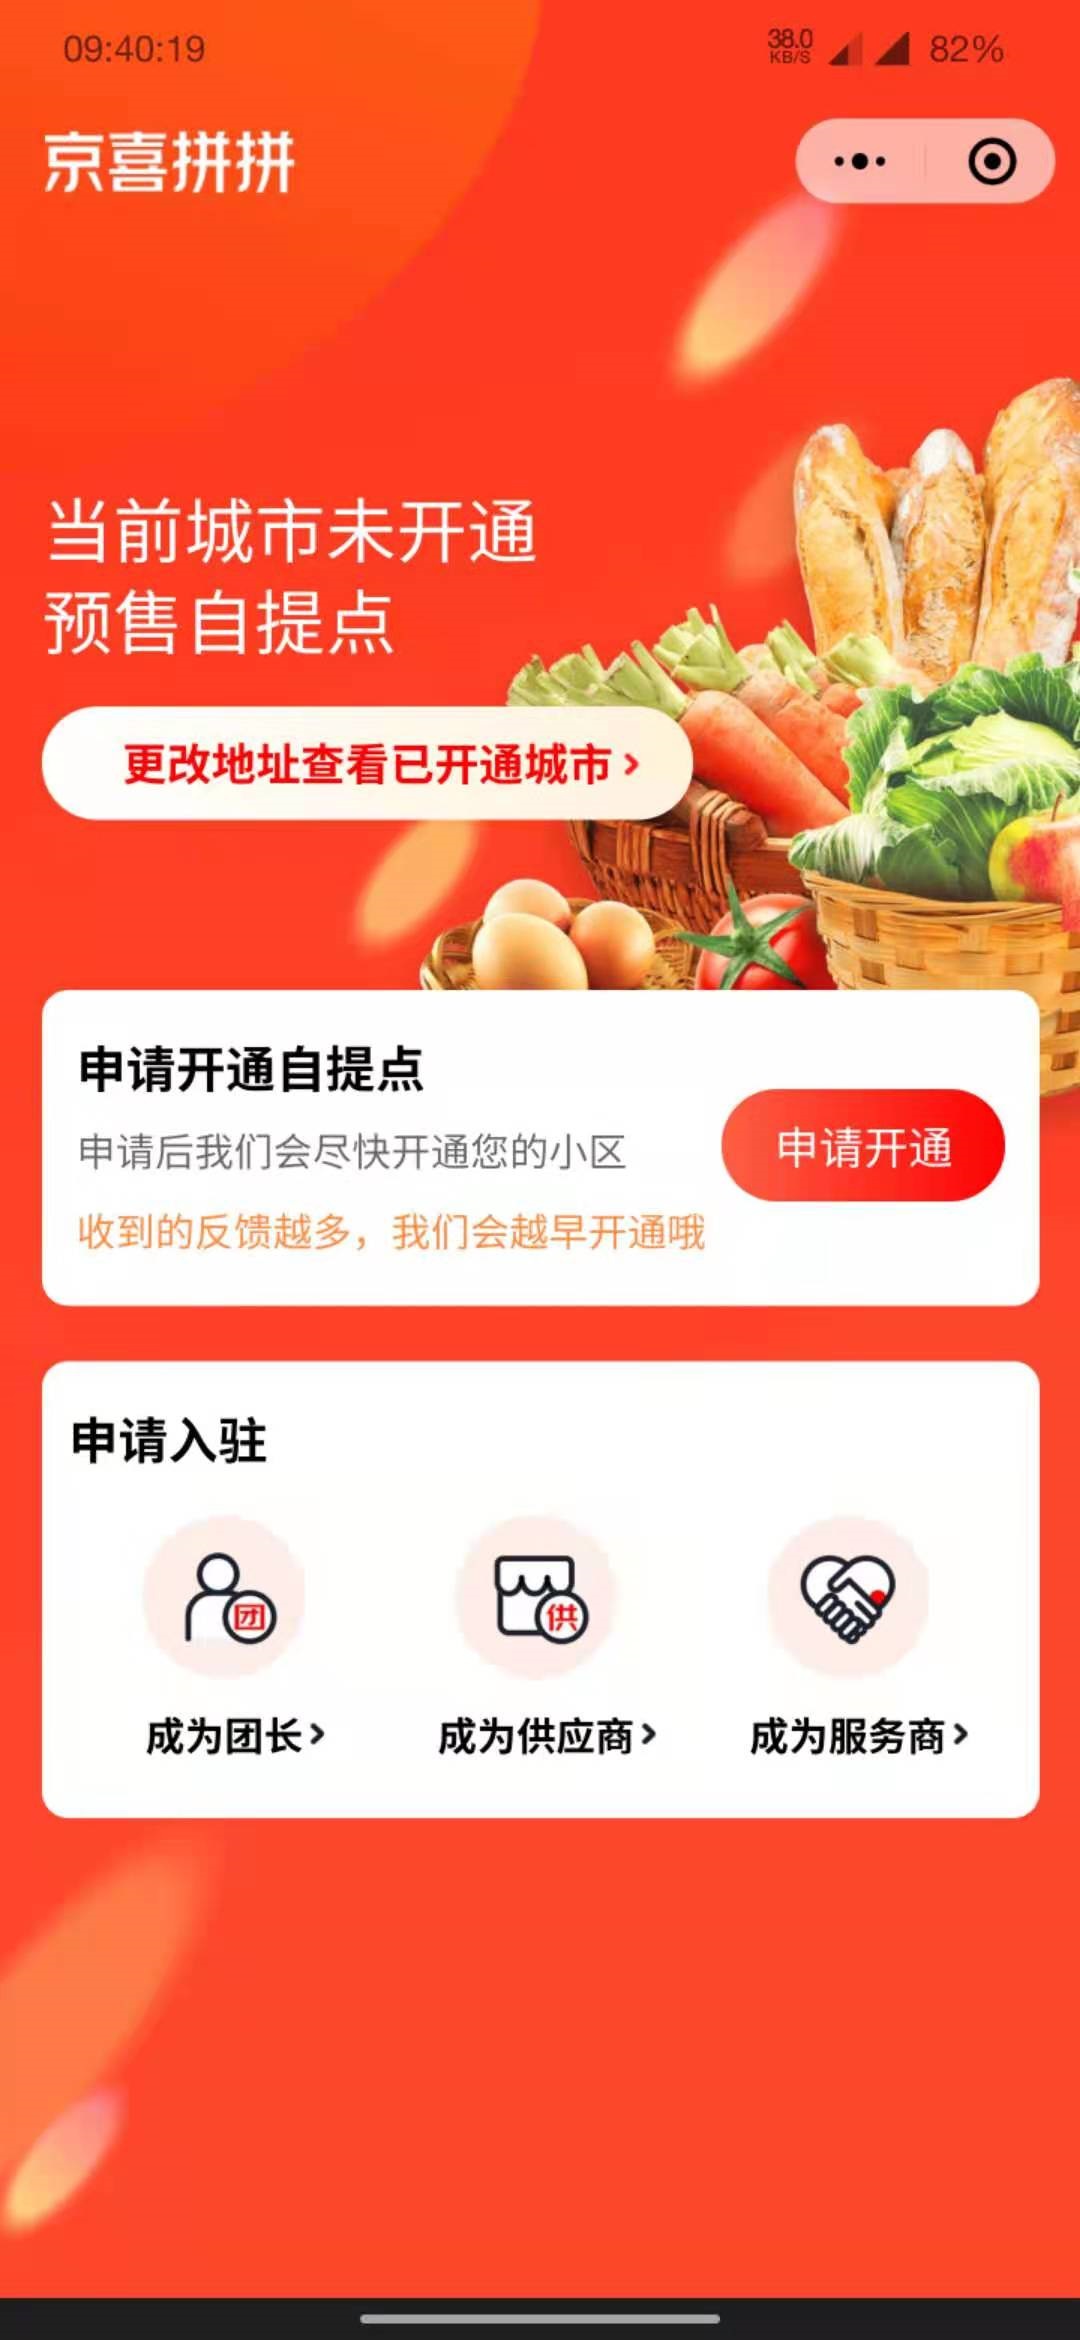 京东推出社区团购平台“京喜拼拼”，目前已上线八个城市